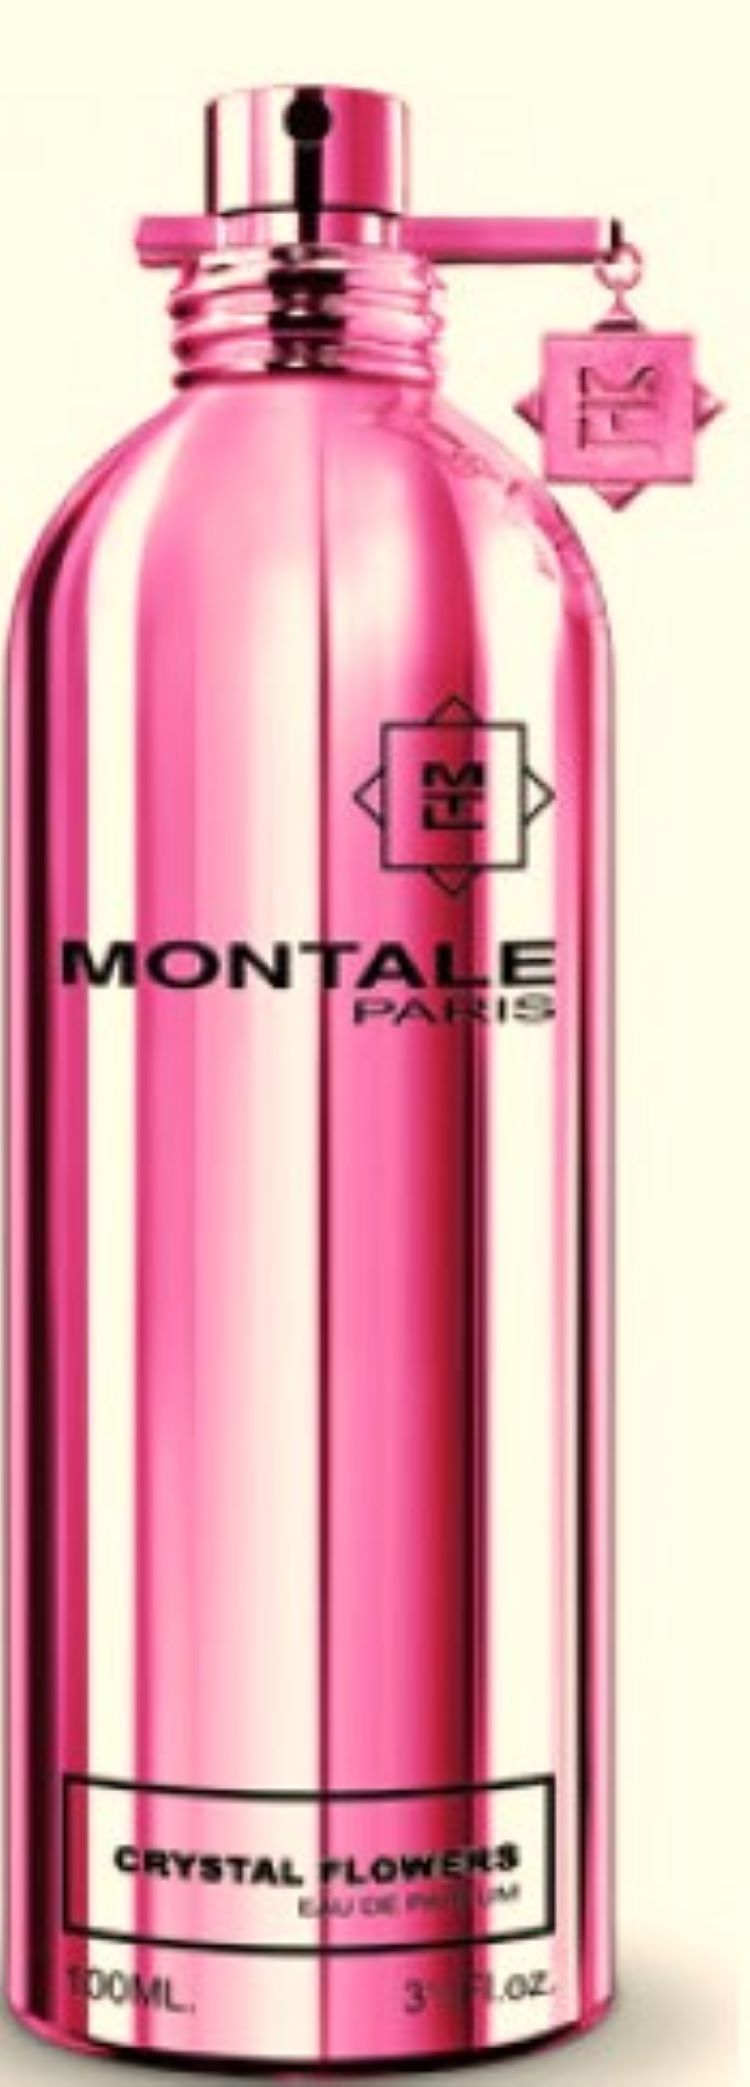 Montale Paris Crystal Flowers EDP 50 ml 